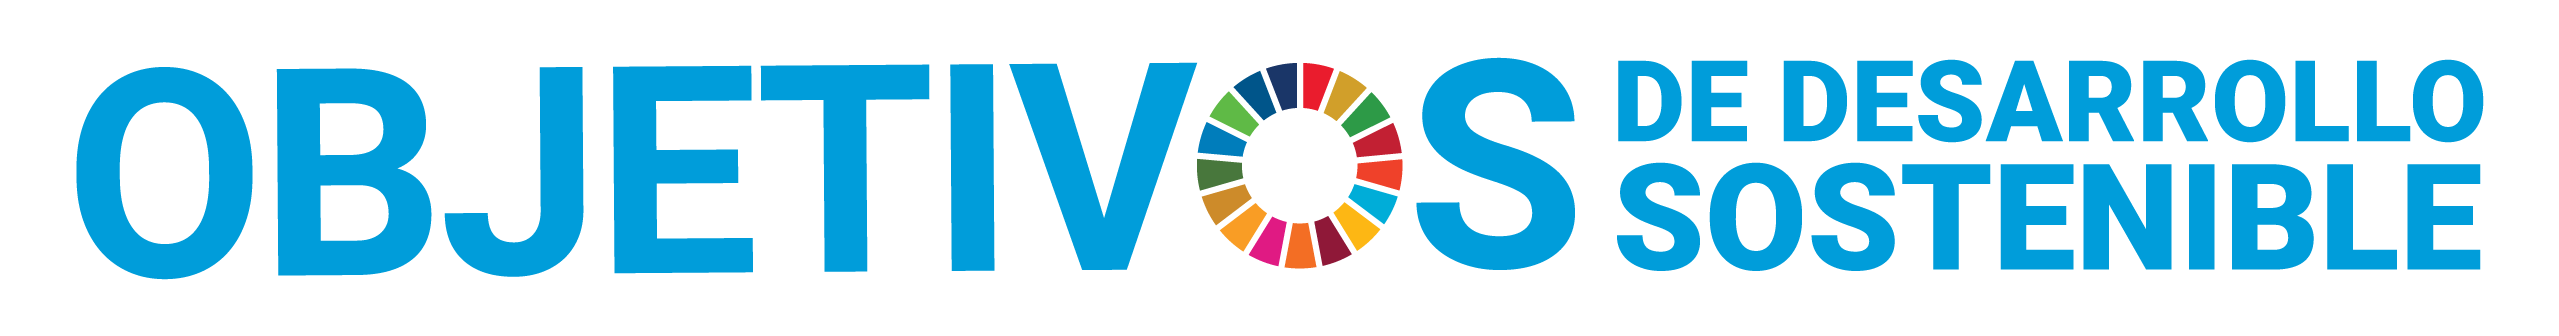 Logotipo de los objetivos de sostenibilidad de las Naciones Unidas